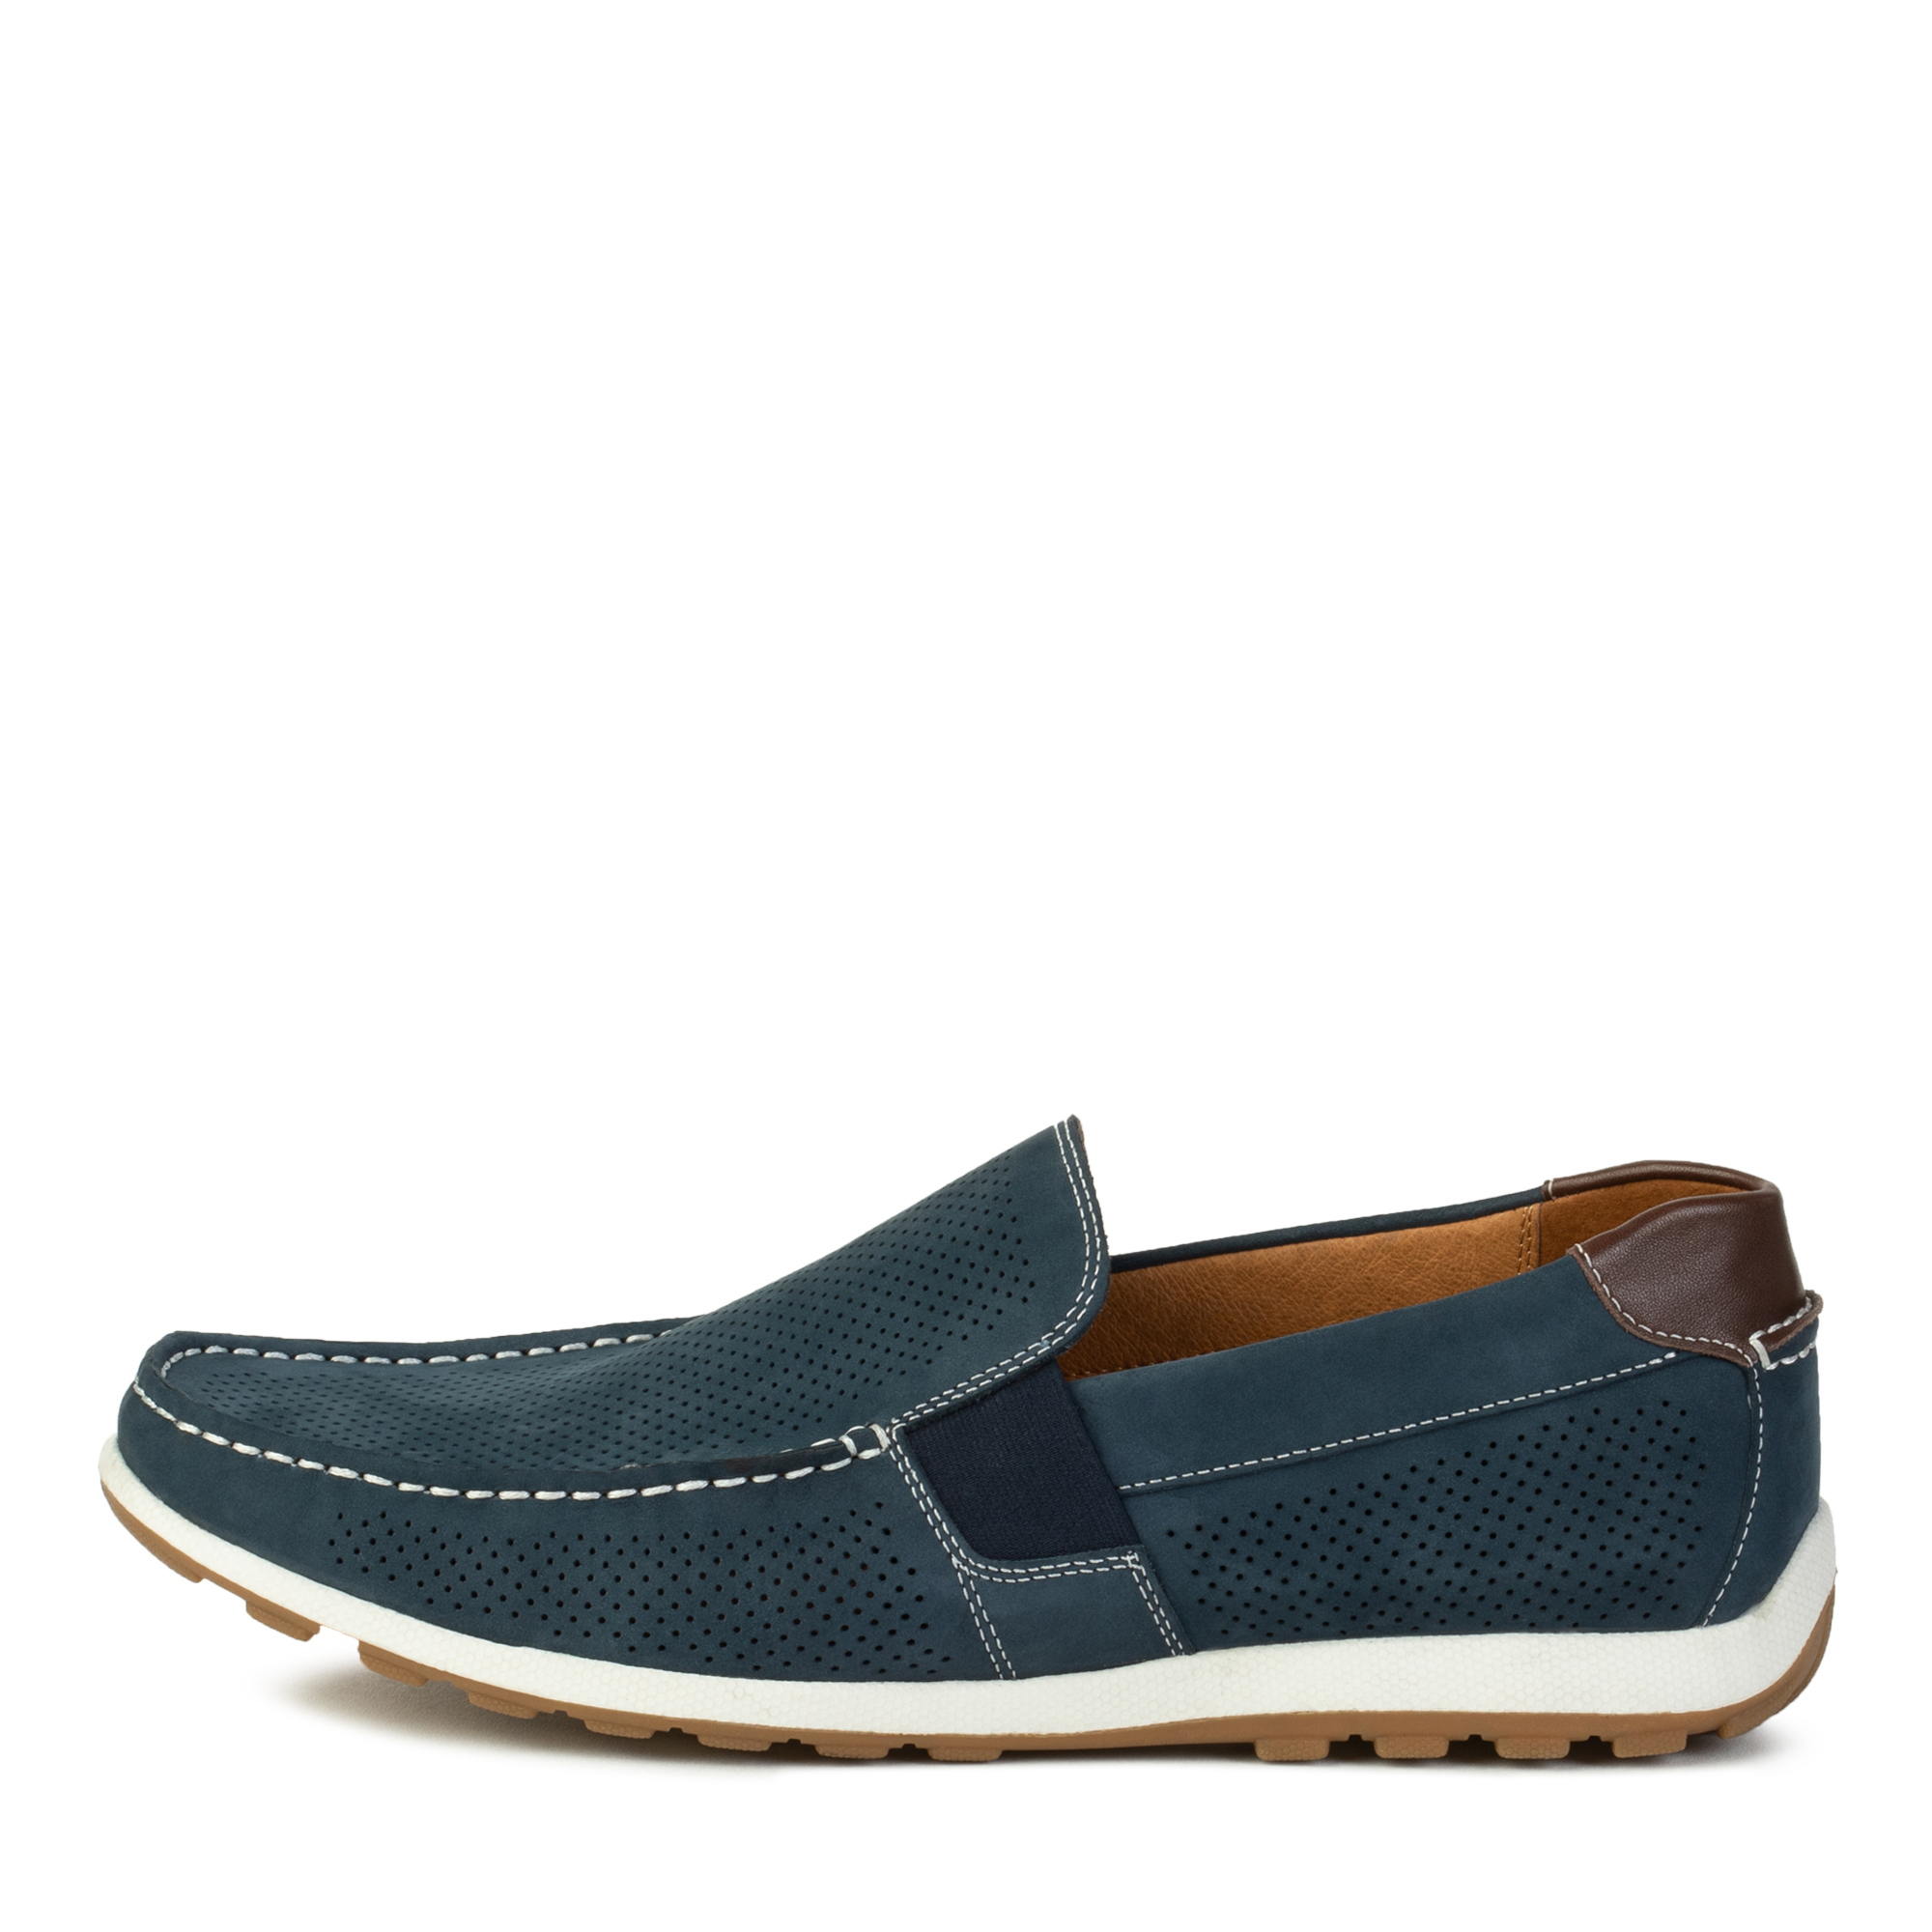 Туфли/полуботинки Thomas Munz 058-124C-1603, цвет синий, размер 44